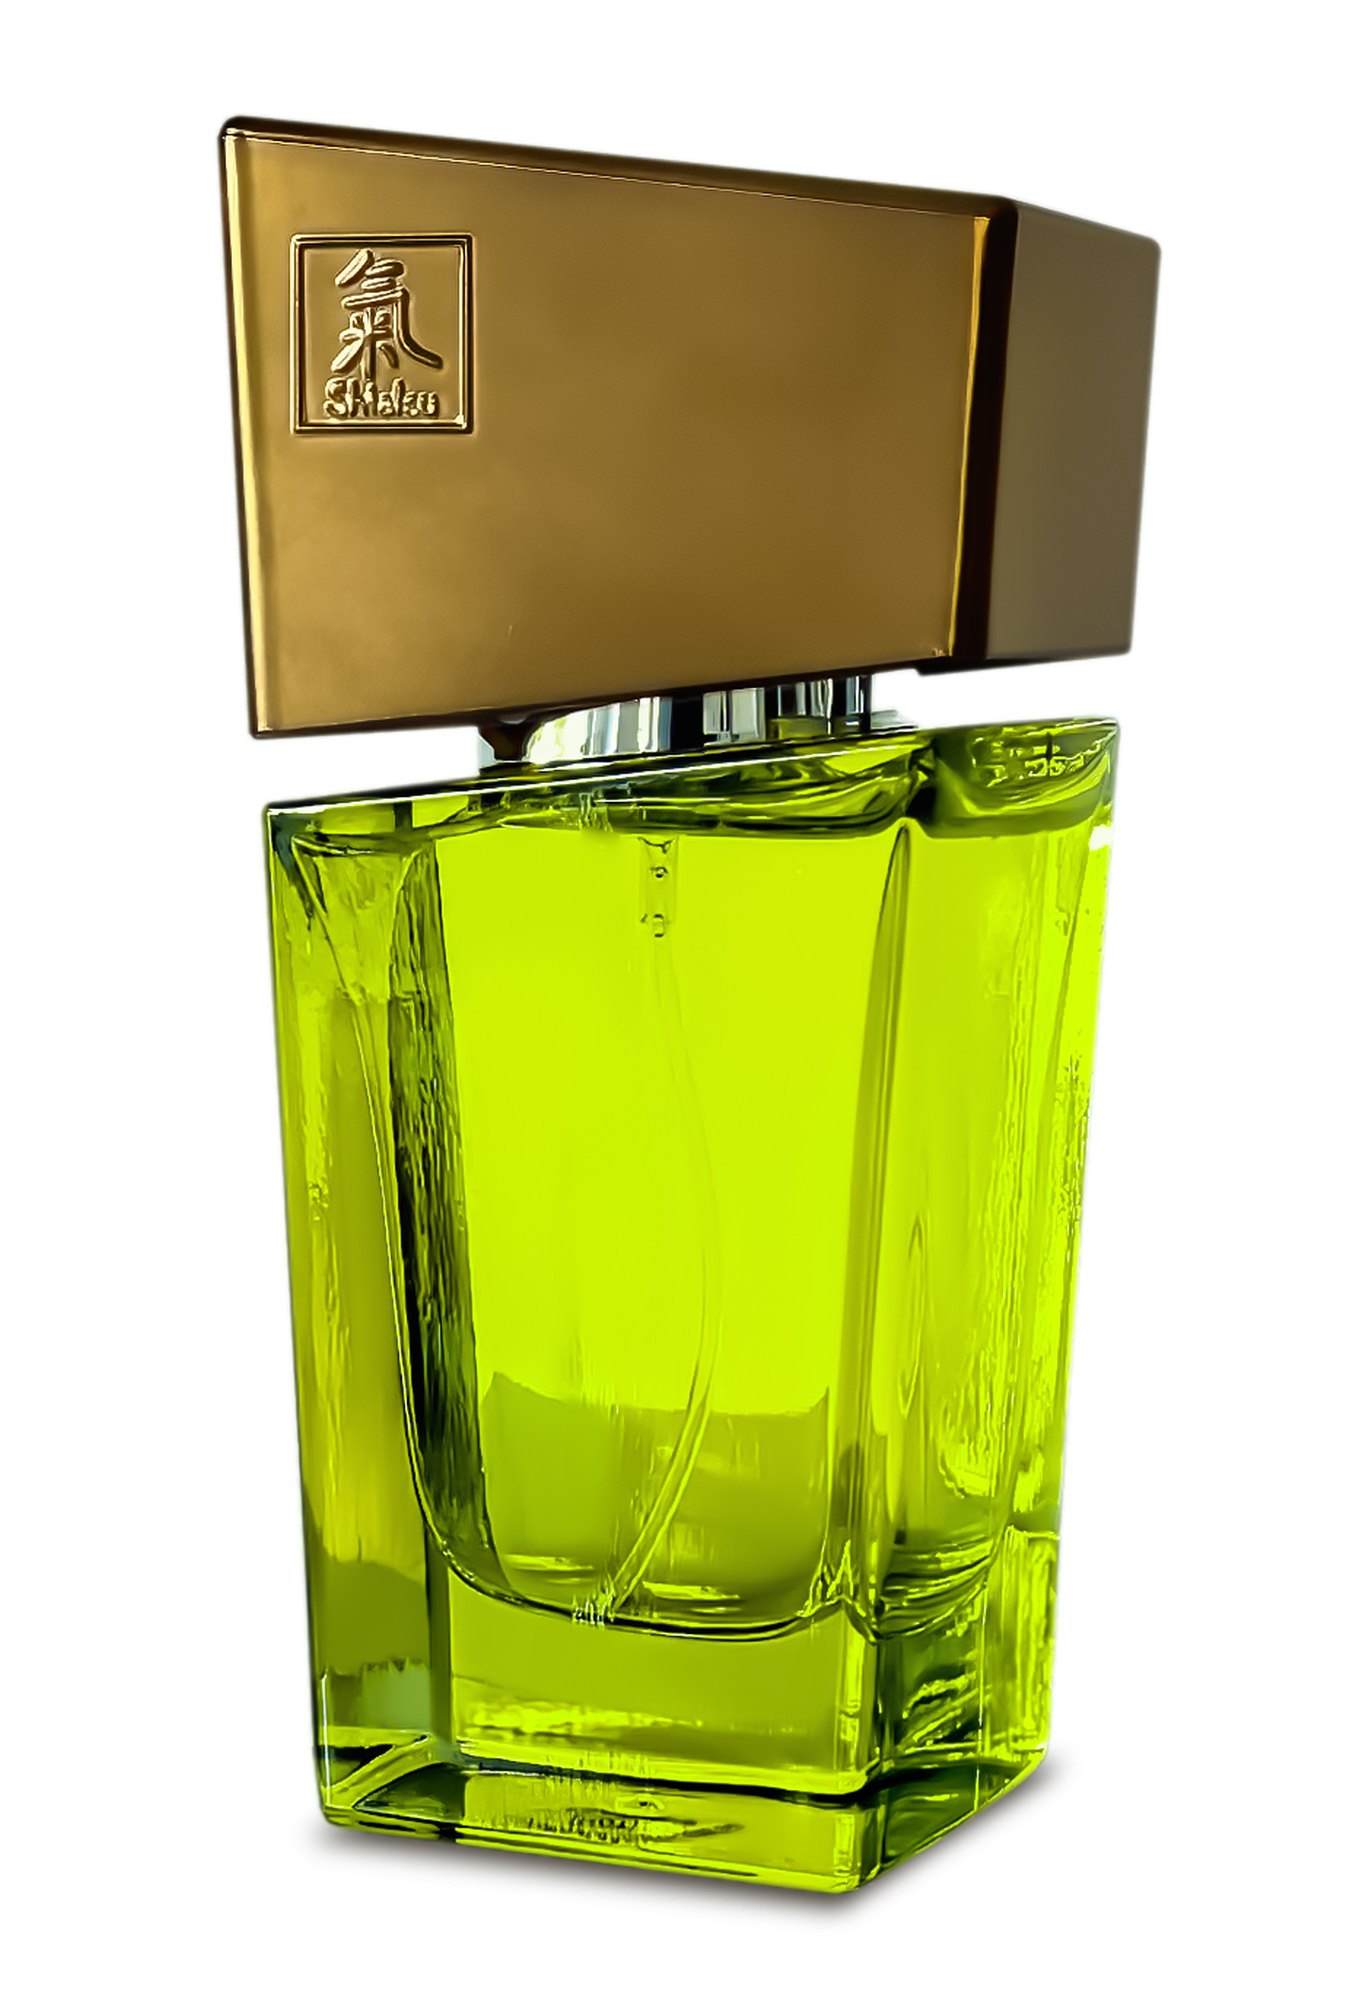 Perfumy feromony dla pań piękny zapach 50 ml